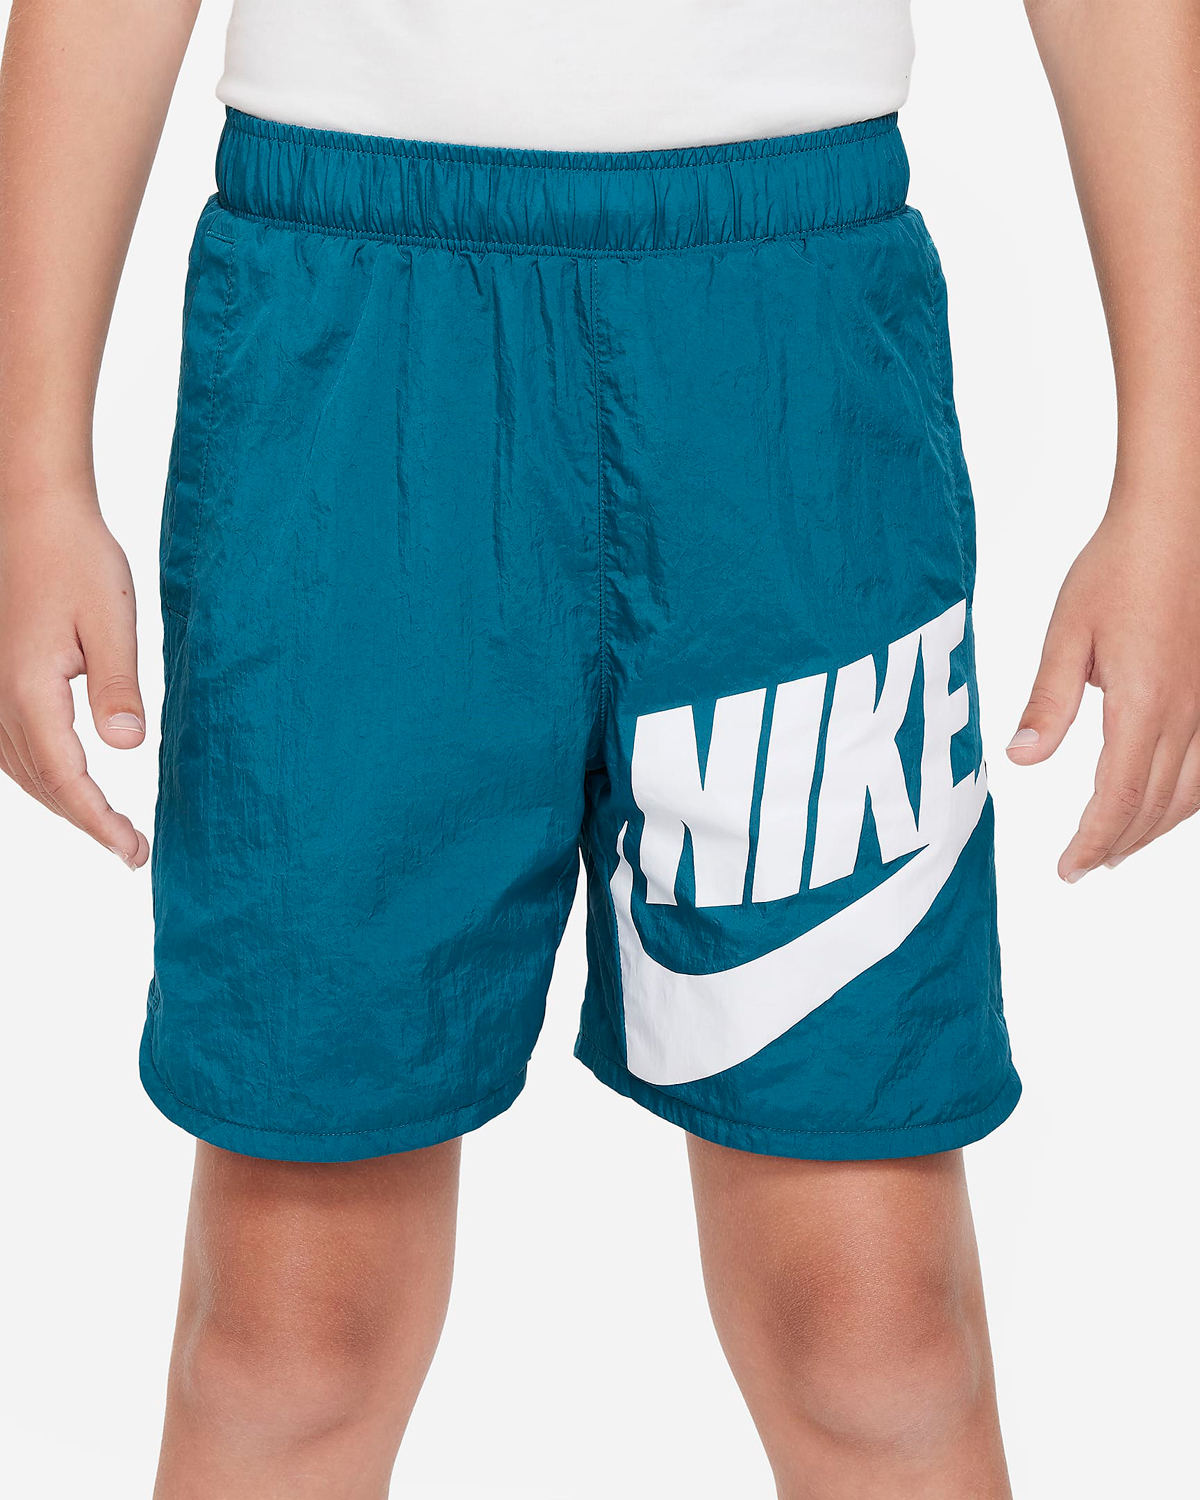 Nike-Sportswear-Shorts-Geode-Teal-Big-Kids-GS-Grade-School